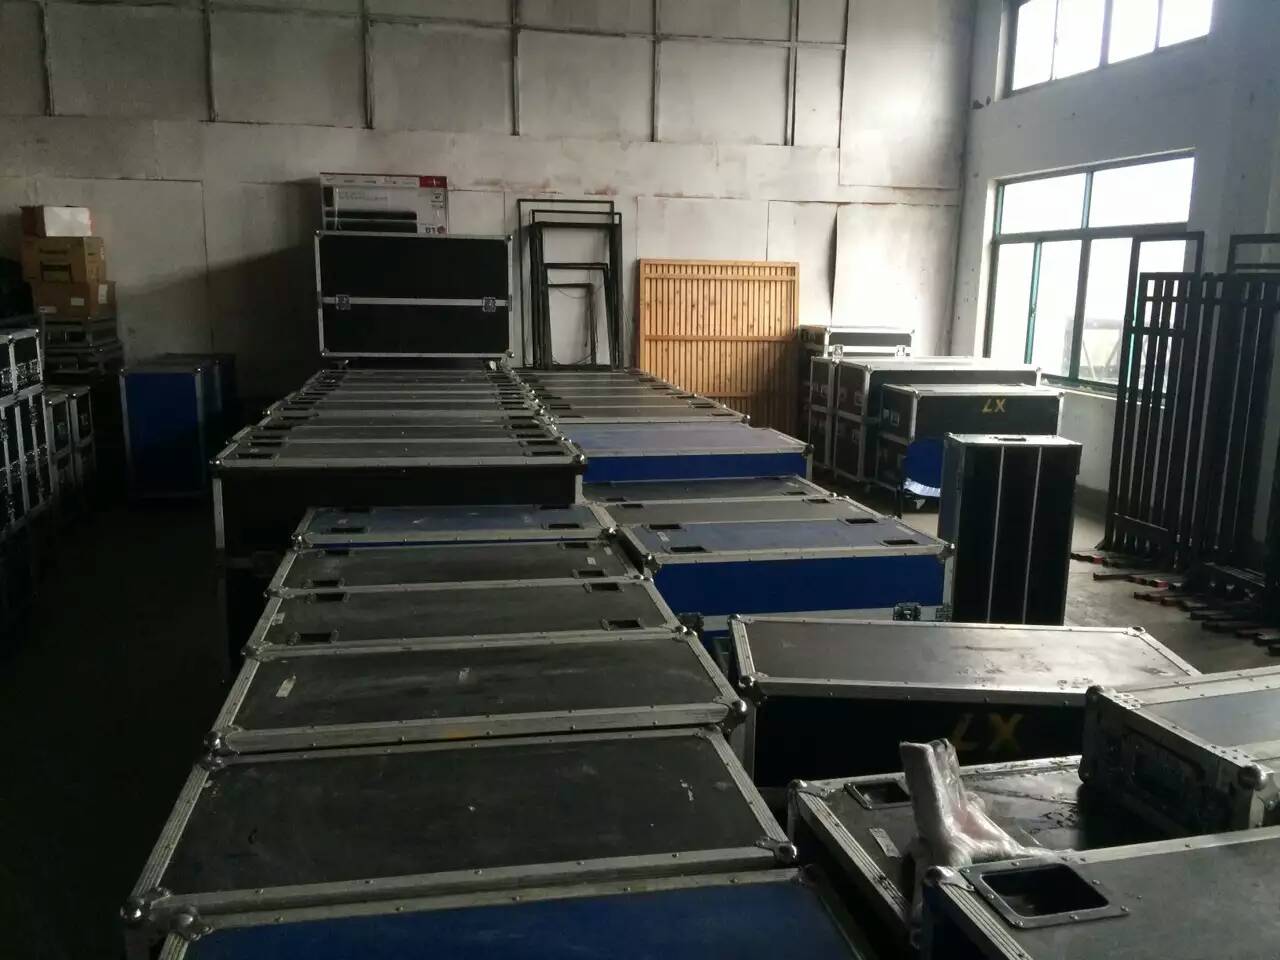 上海徐汇会务电视机搭建公司 笔记本连接电视机 年会定制背景板搭建